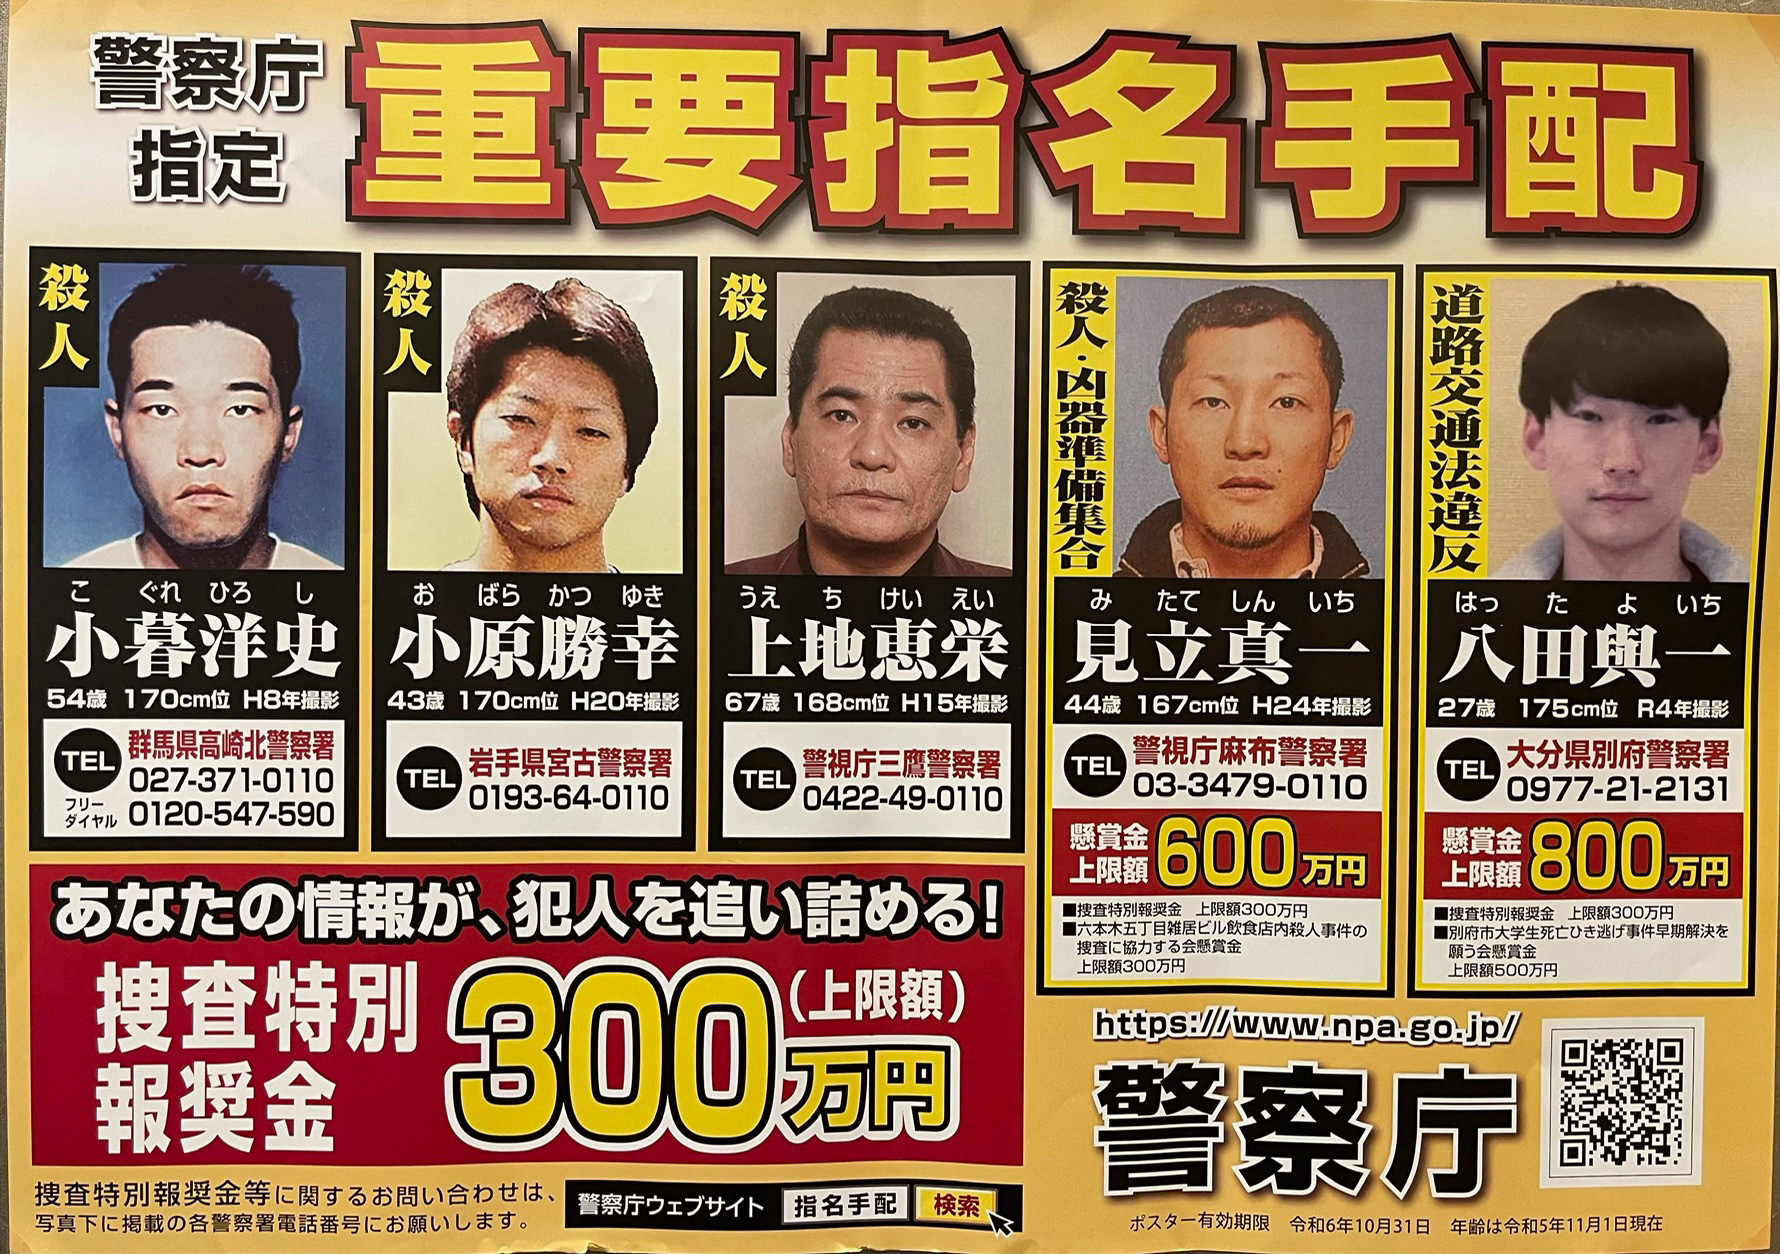 指名手配被疑者に関する情報の提供について 日本美容外科医師会